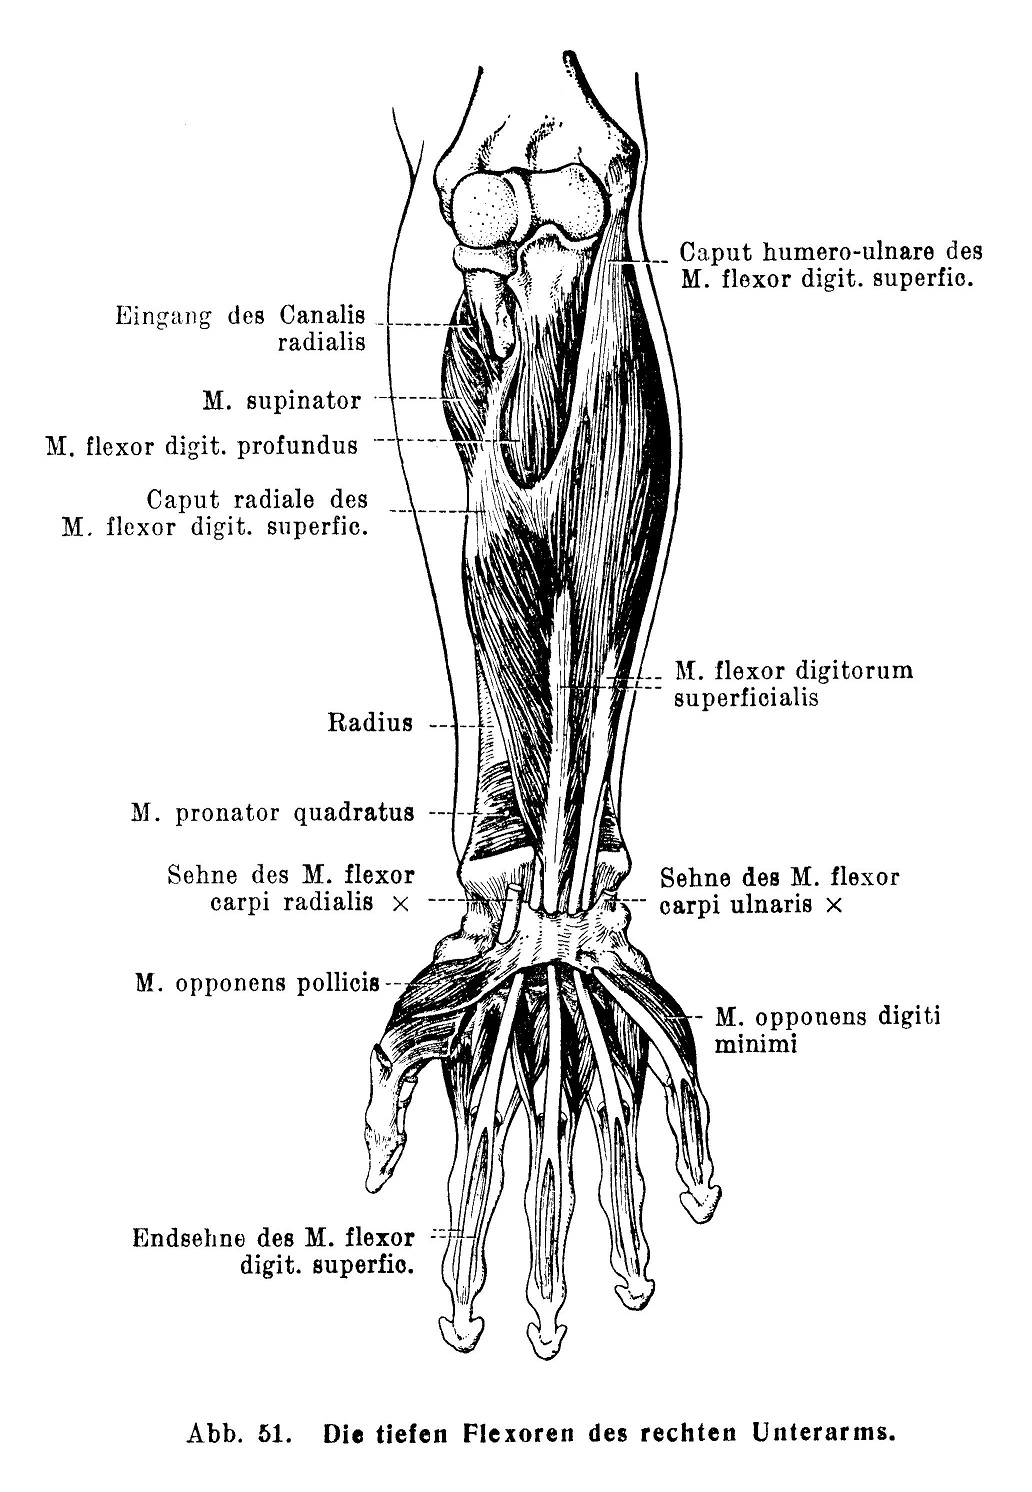 Die tiefen Flexoren des rechten Unterarms